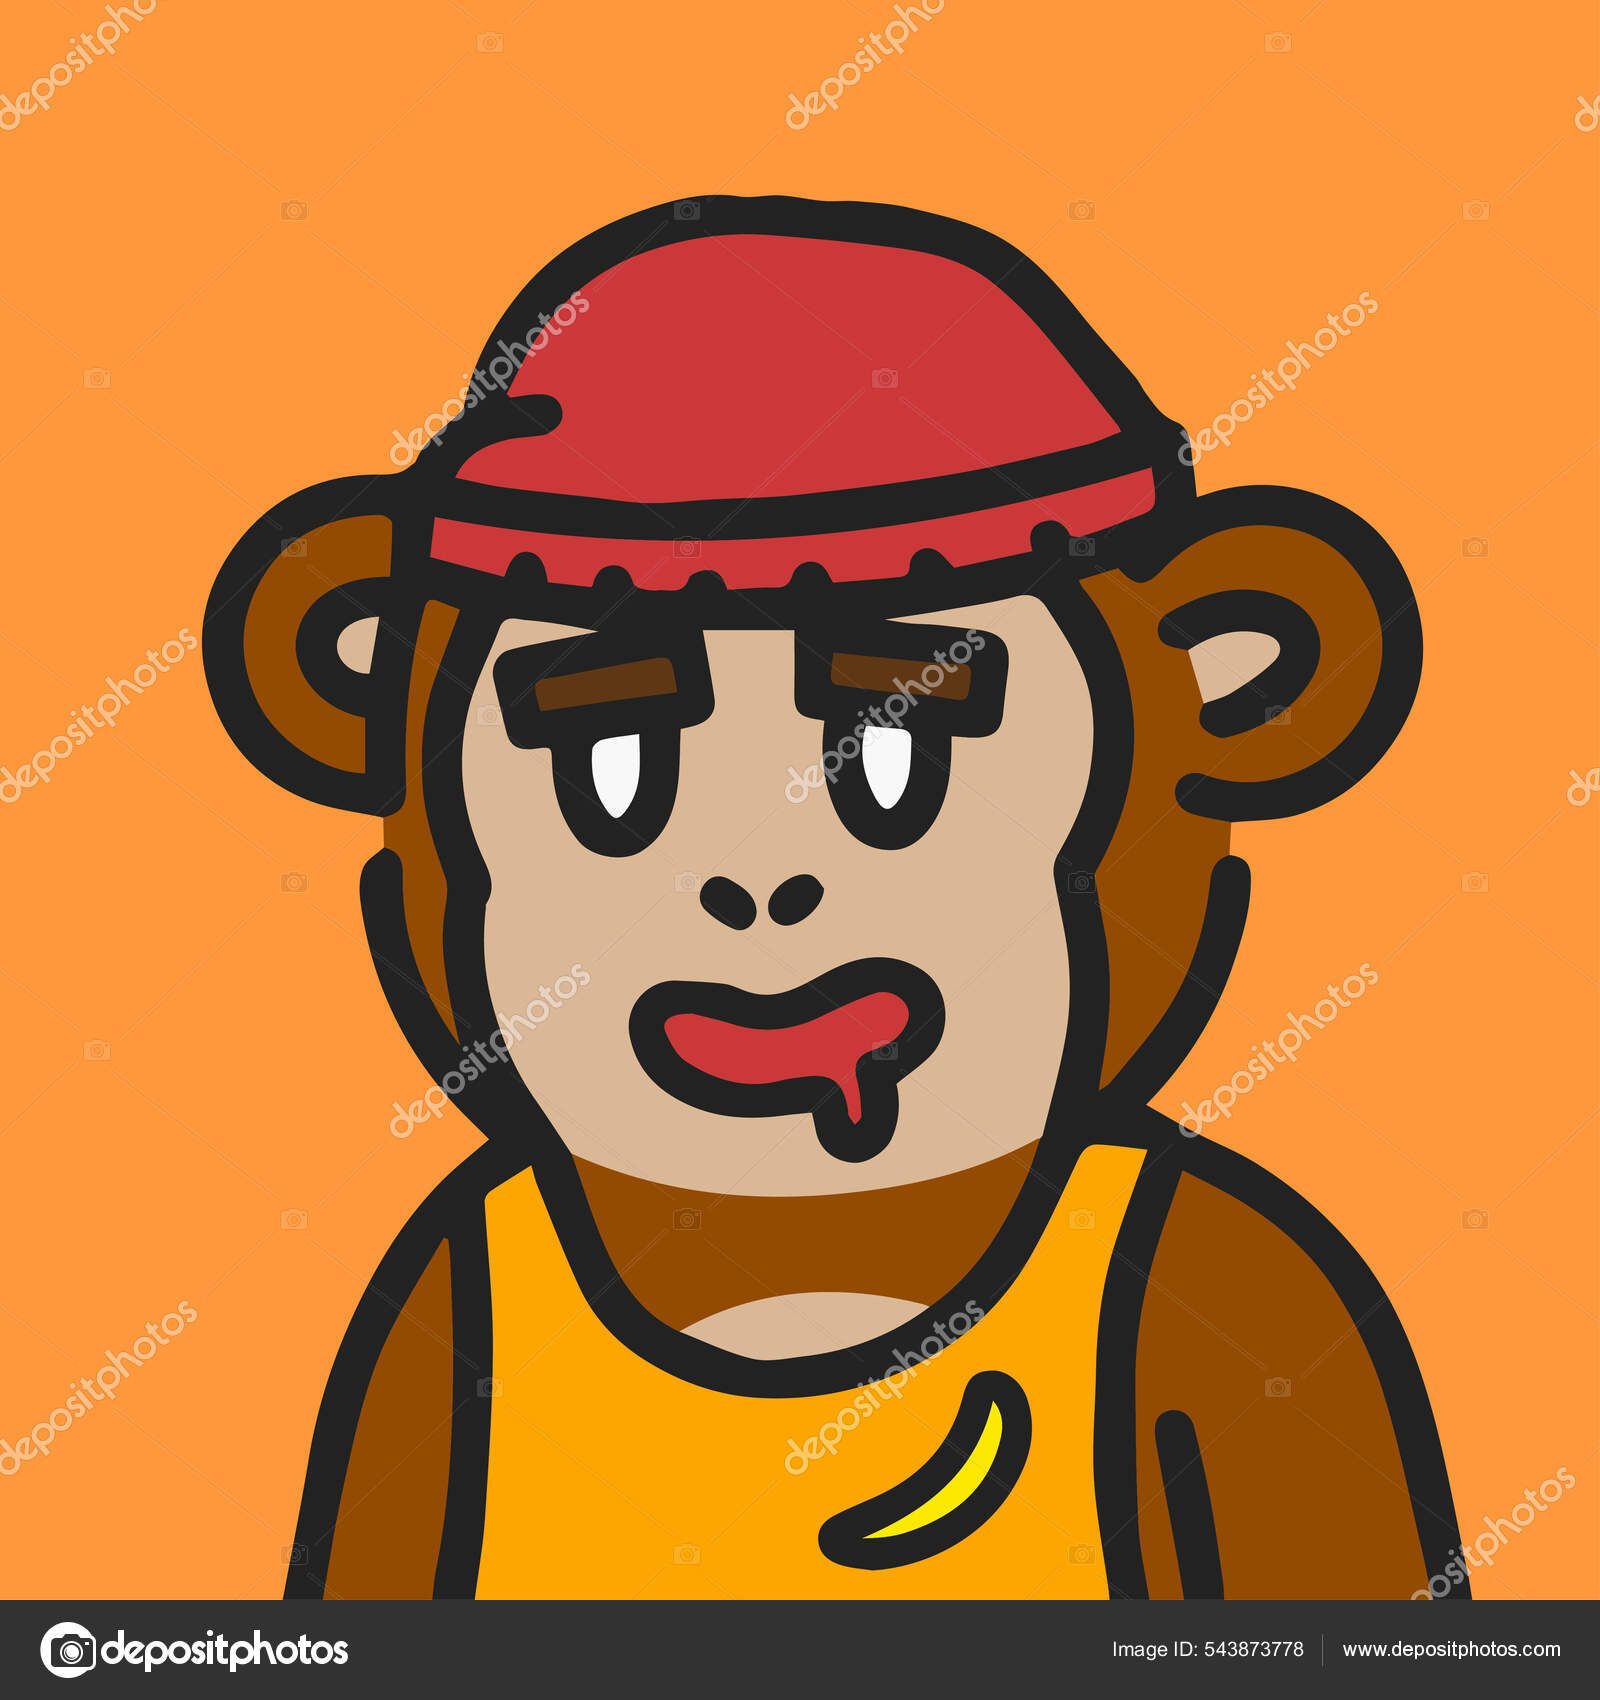 Ilustração de macaco de personagem de desenho animado colorido